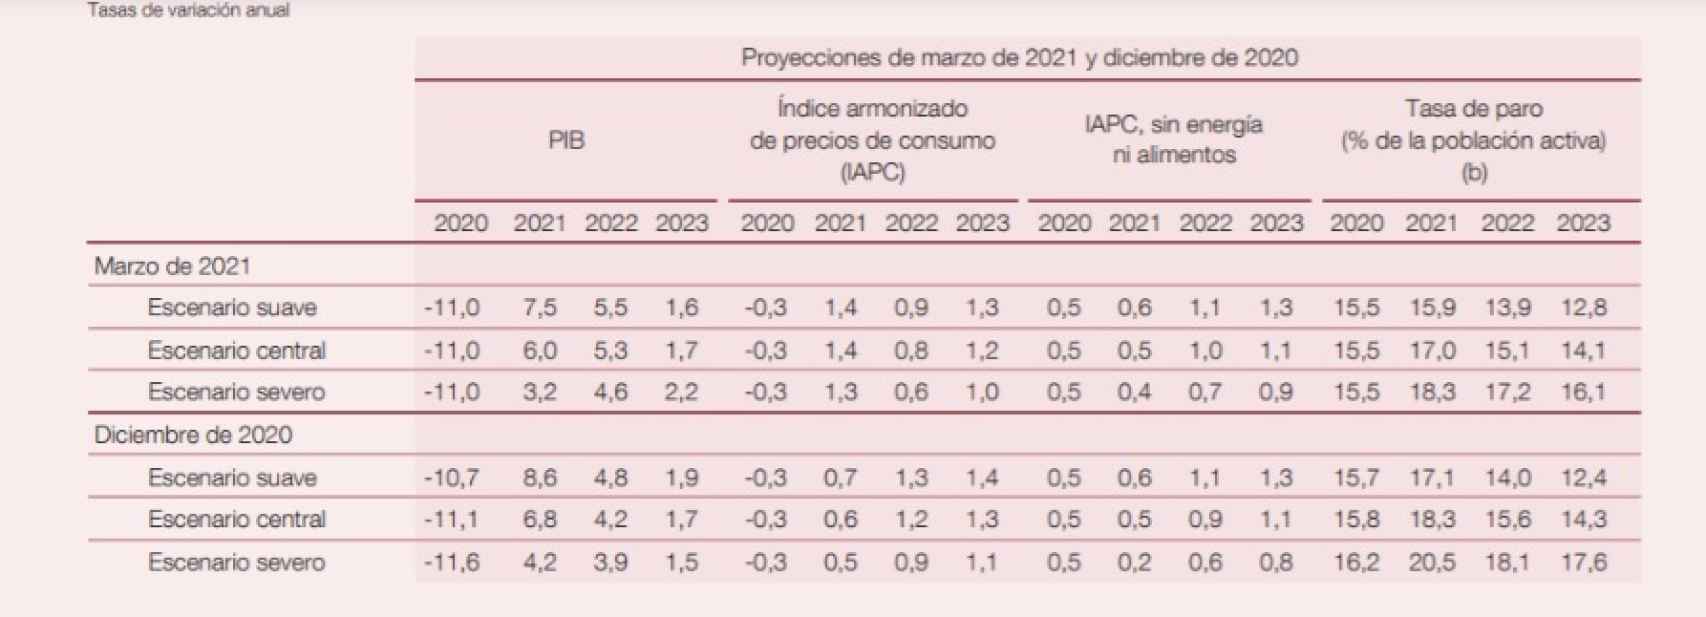 Previsiones macroeconómicas del Banco de España.